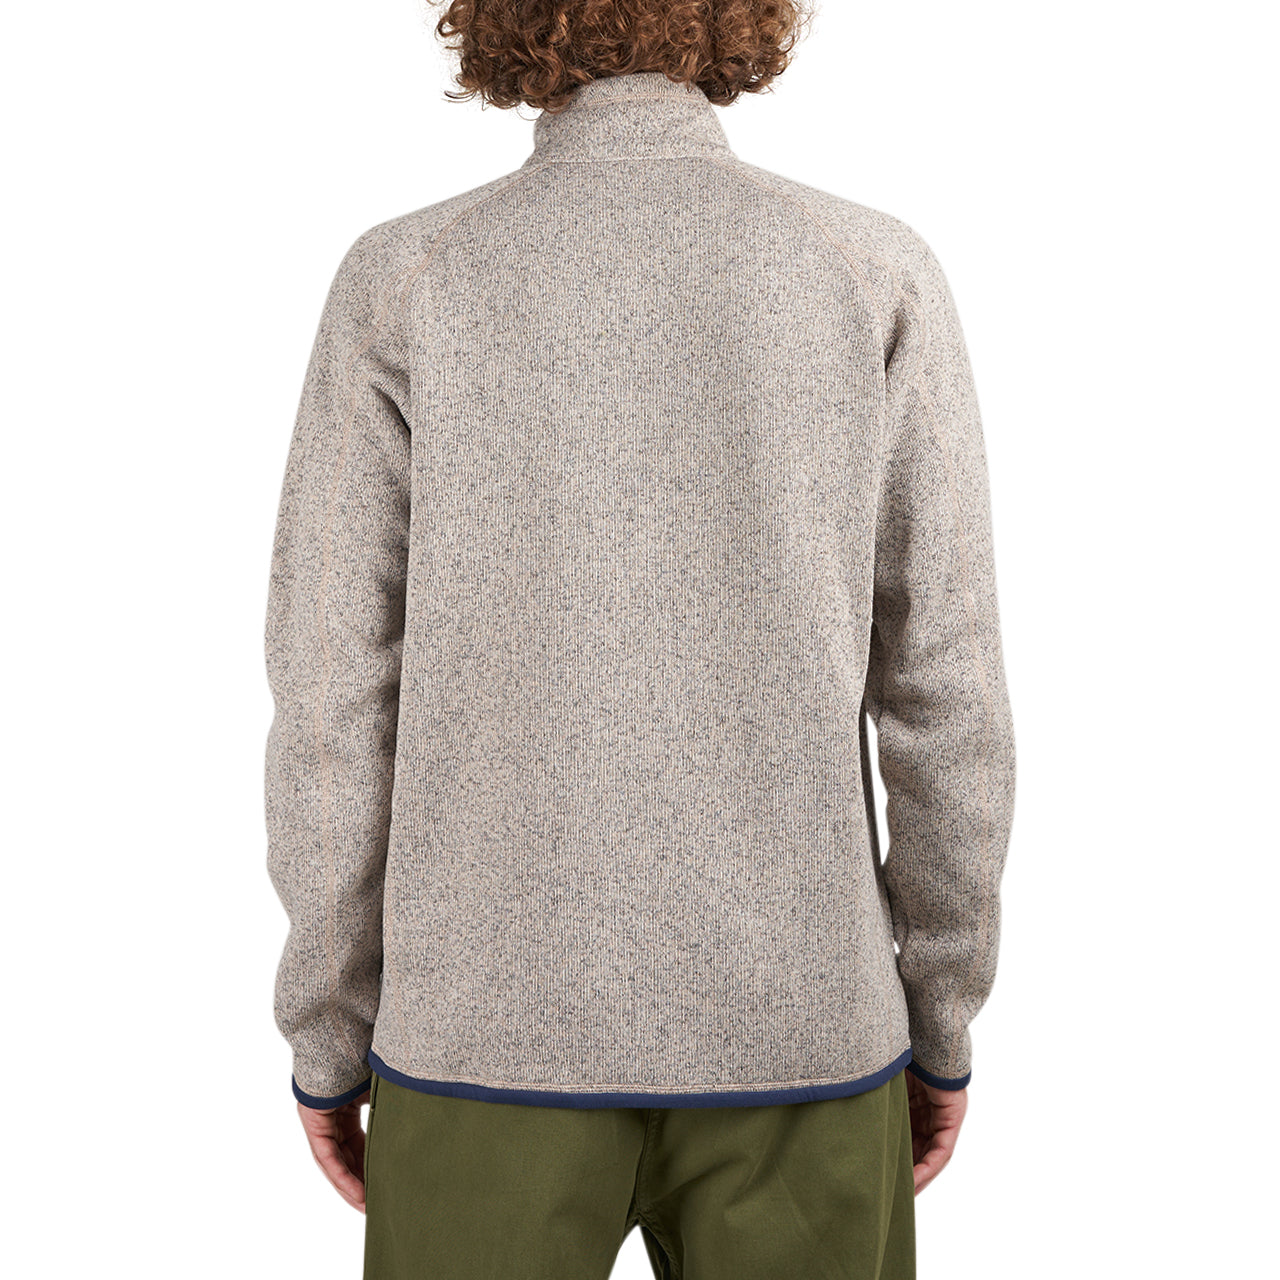 Patagonia Men's Better Sweater® Fleece Jacket 